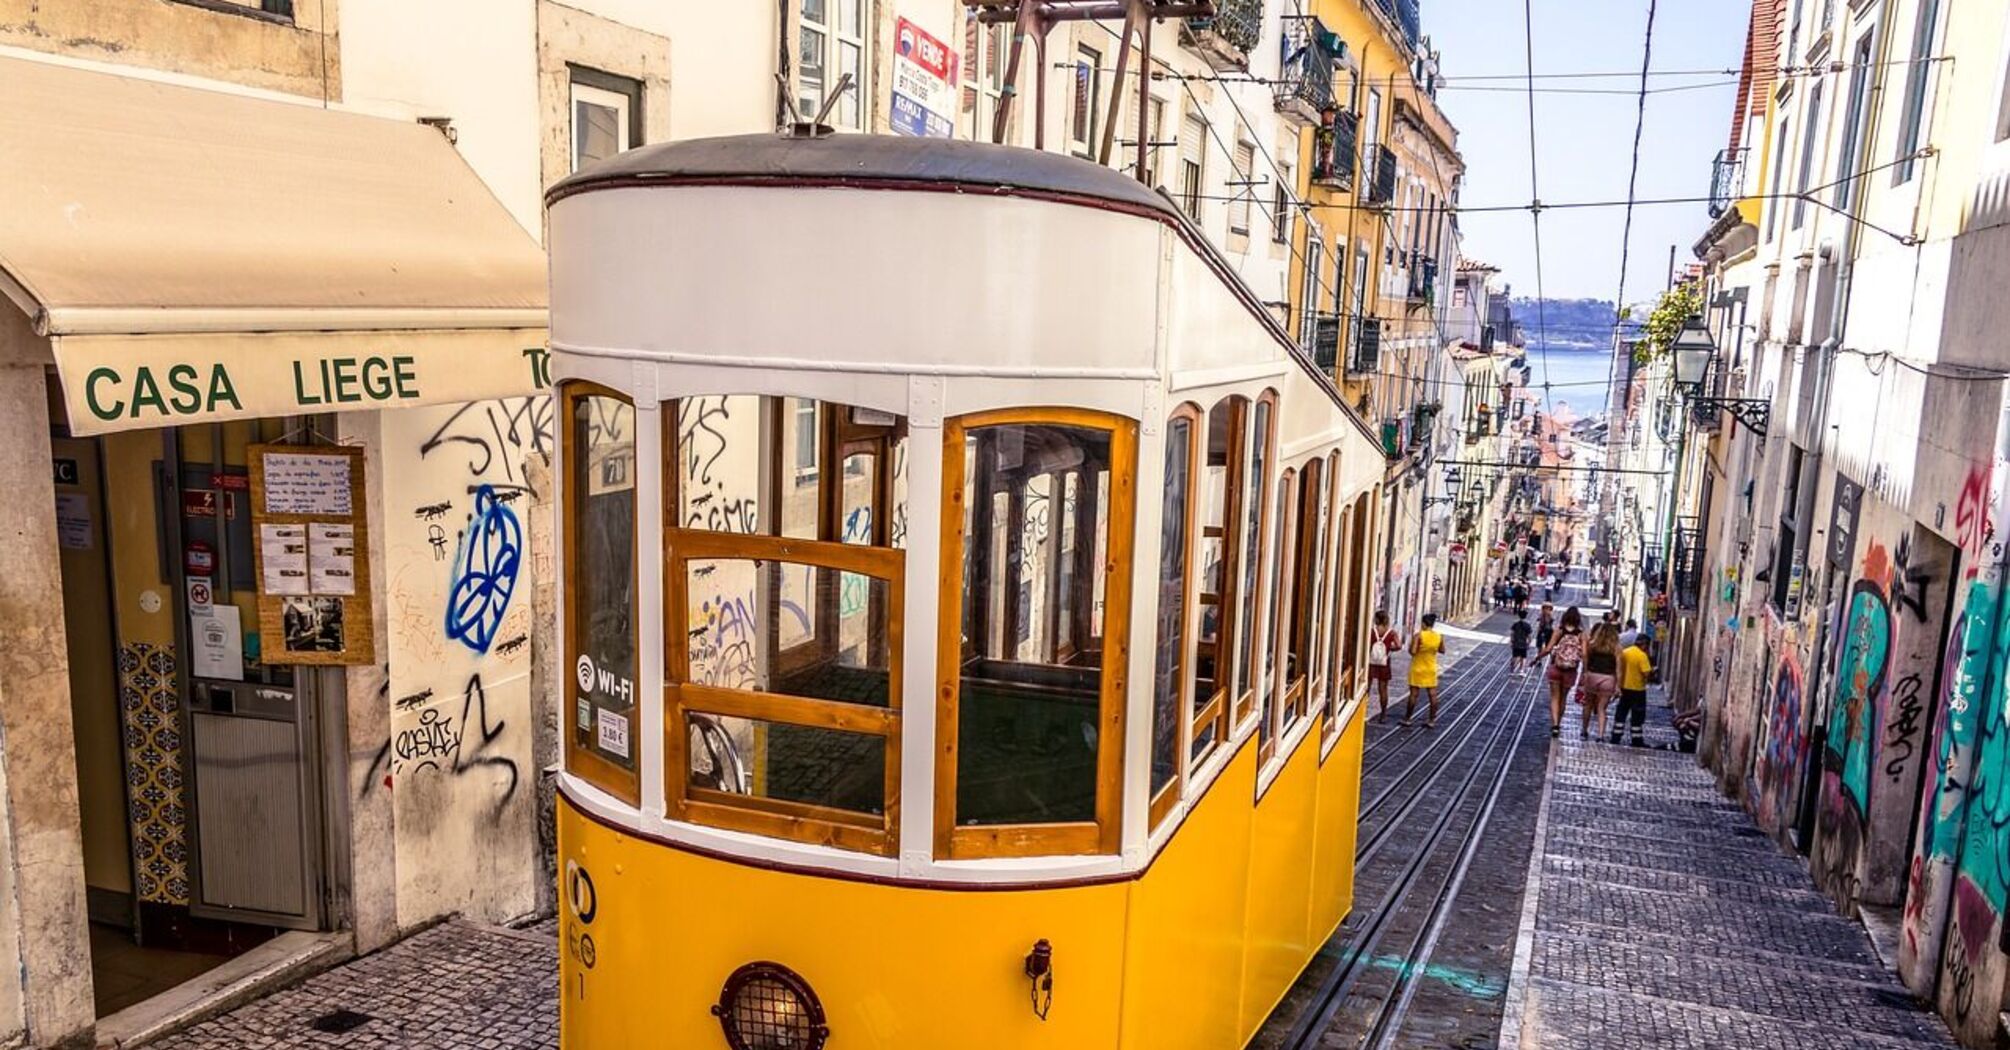 Громадський транспорт у Лісабоні: як користуватися трамваями, фунікулерами, метро тощо.